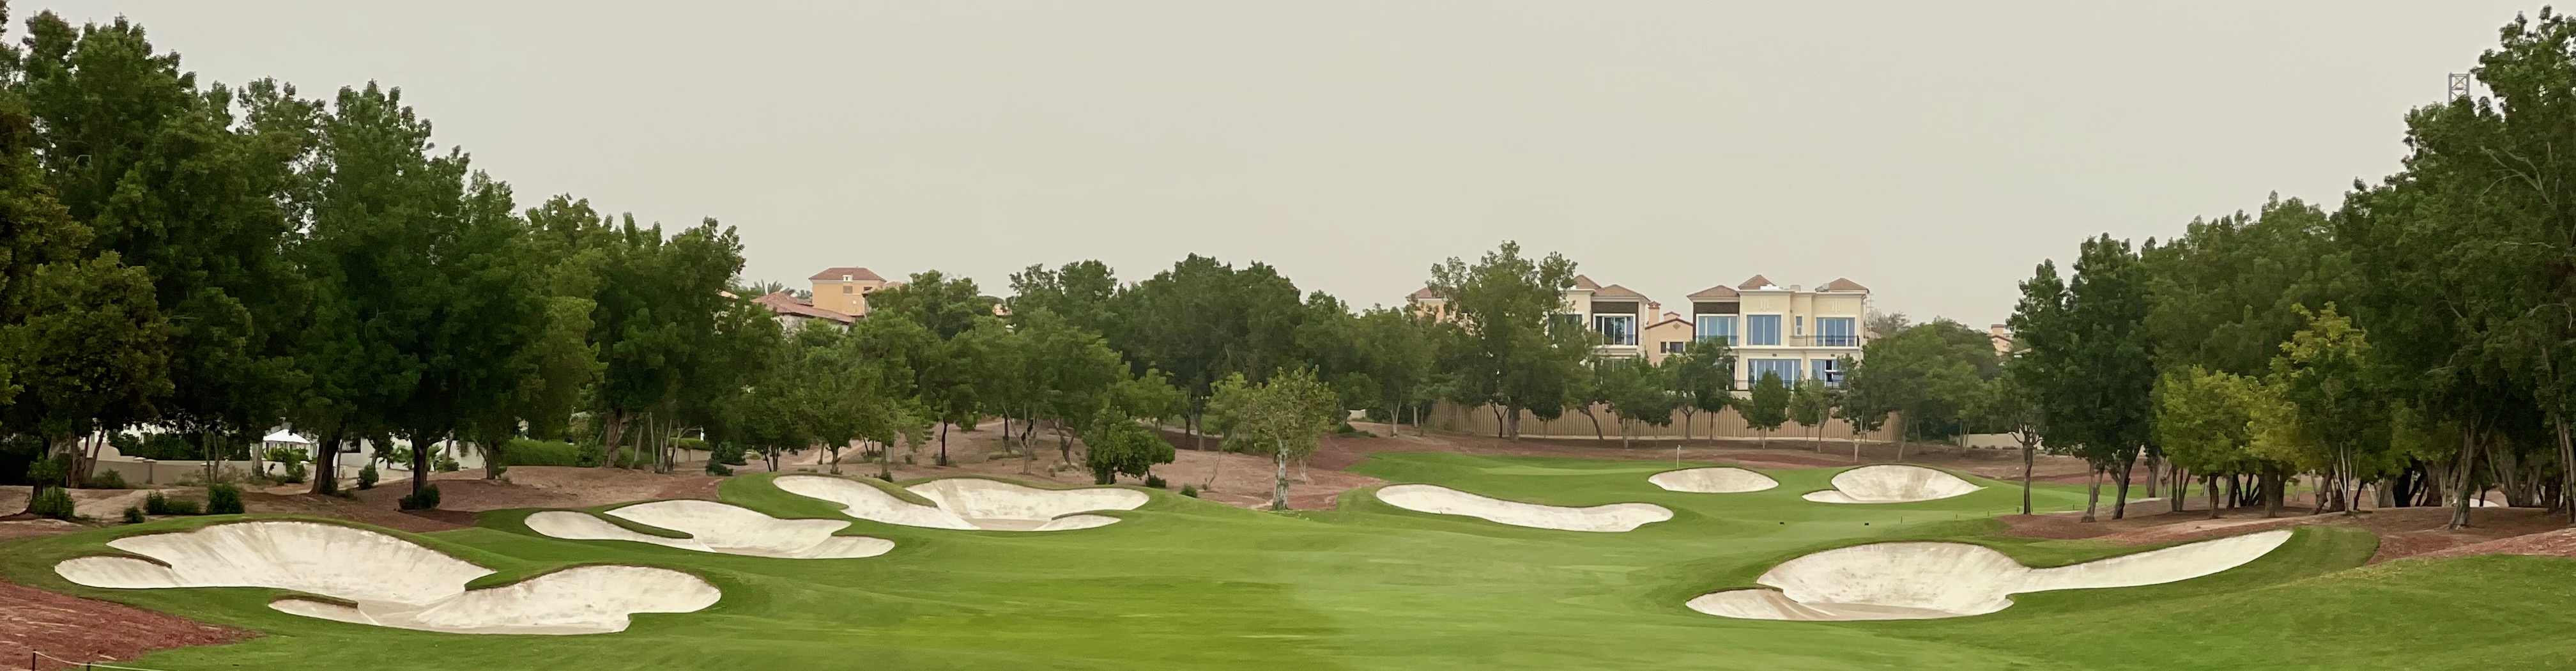 Jumeirah Golf Estates- Earth Course, hole 7 